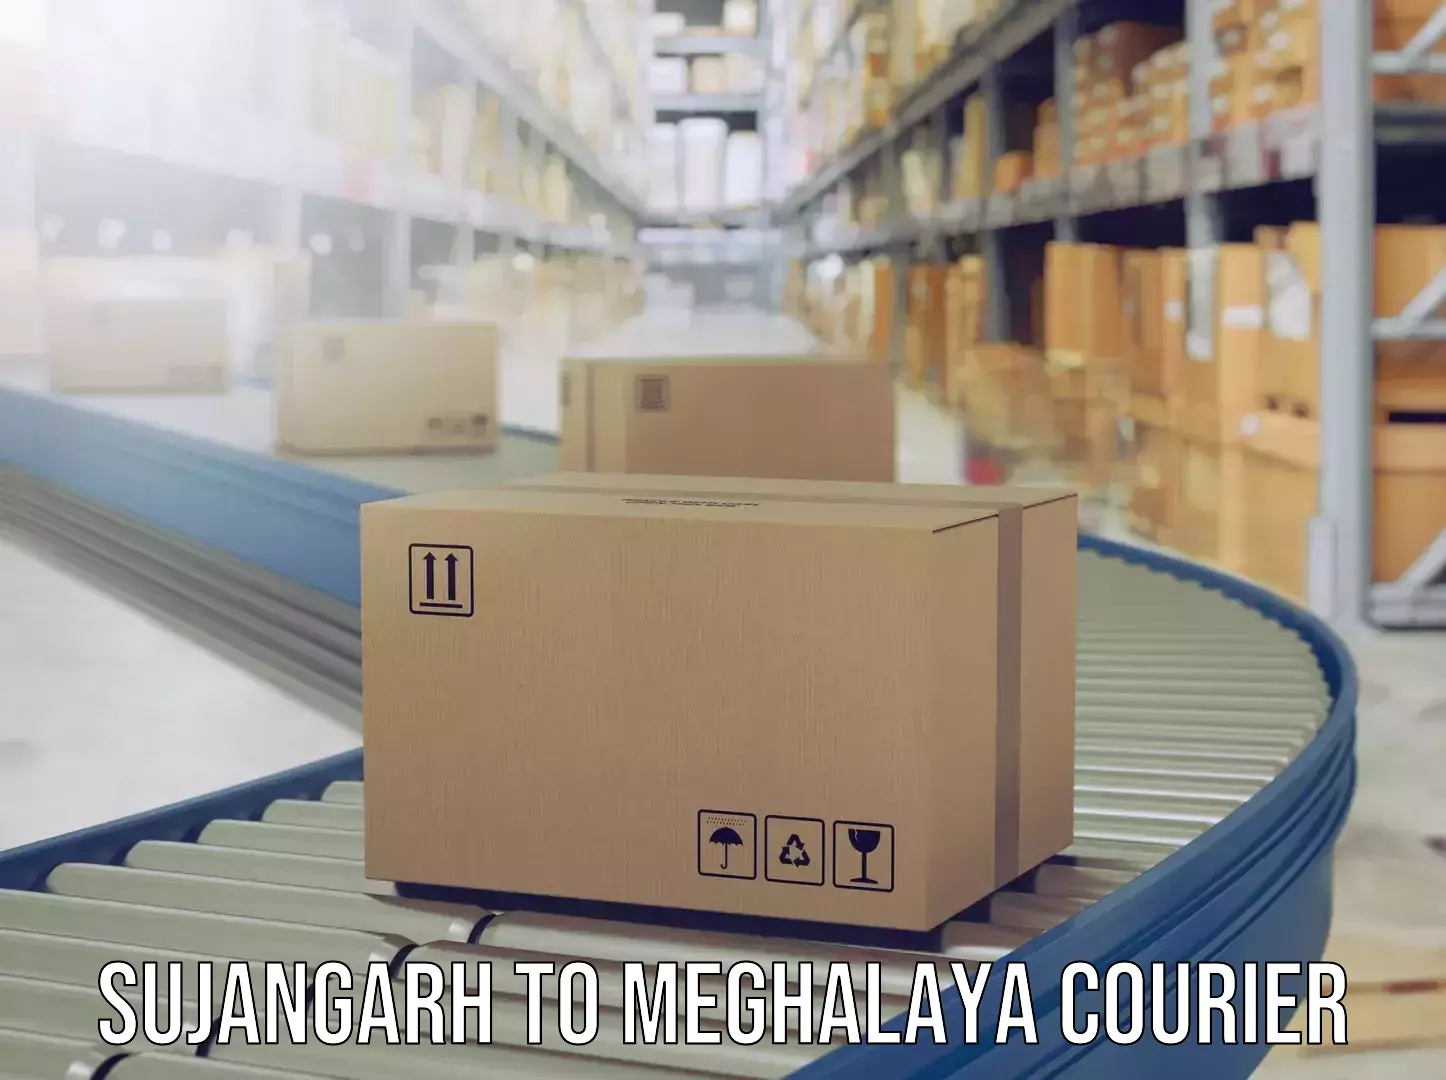 Luggage delivery estimate Sujangarh to NIT Meghalaya